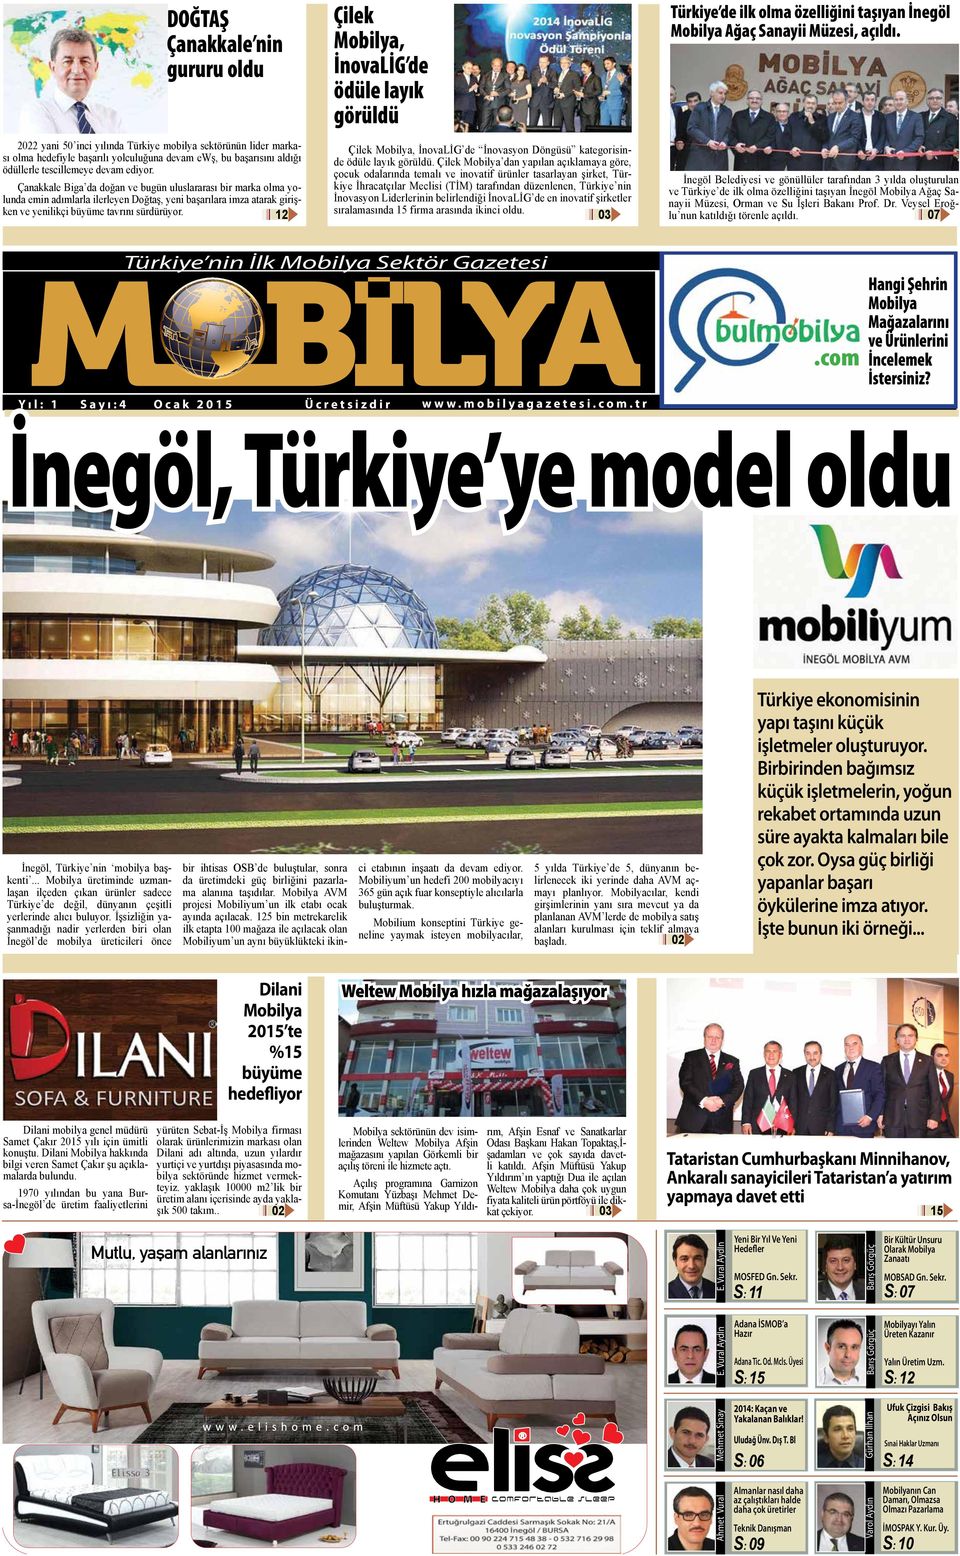 Çilek Mobilya, İnovaLİG de ödüle layık görüldü Türkiye de ilk olma özelliğini taşıyan İnegöl Mobilya Ağaç Sanayii Müzesi, açıldı.